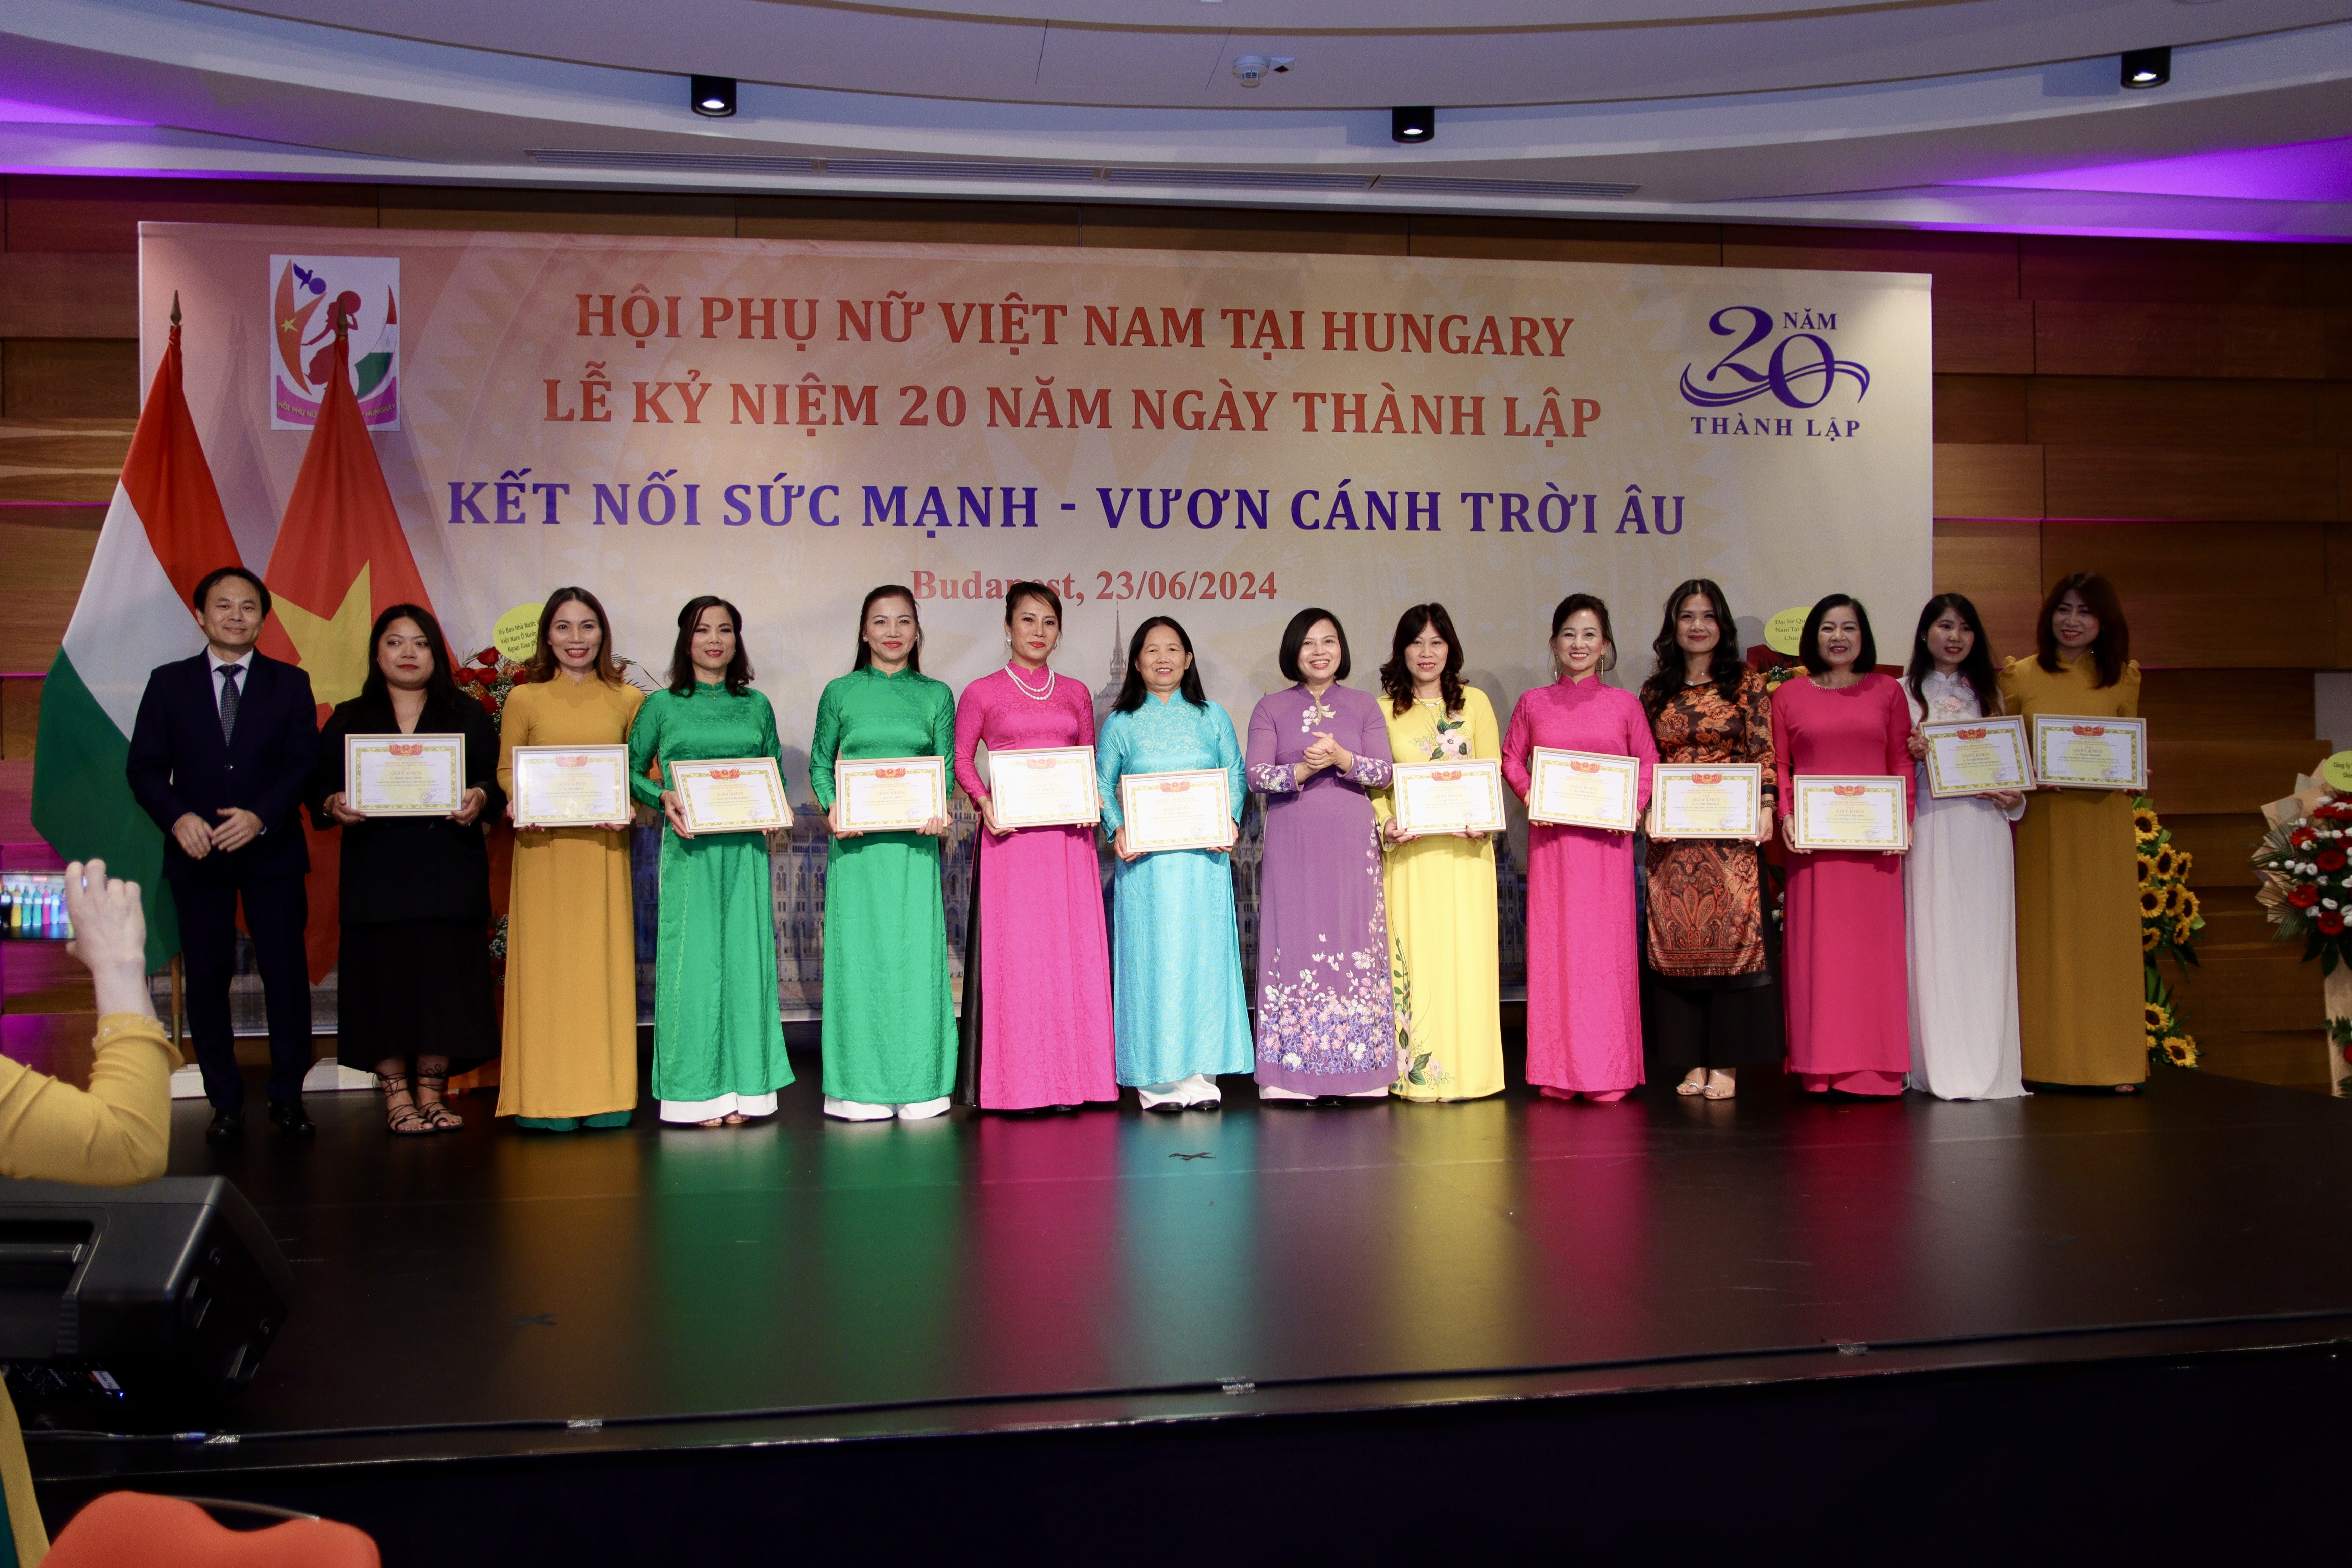 Ngội nhà chung của phụ nữ Việt tại Hungary